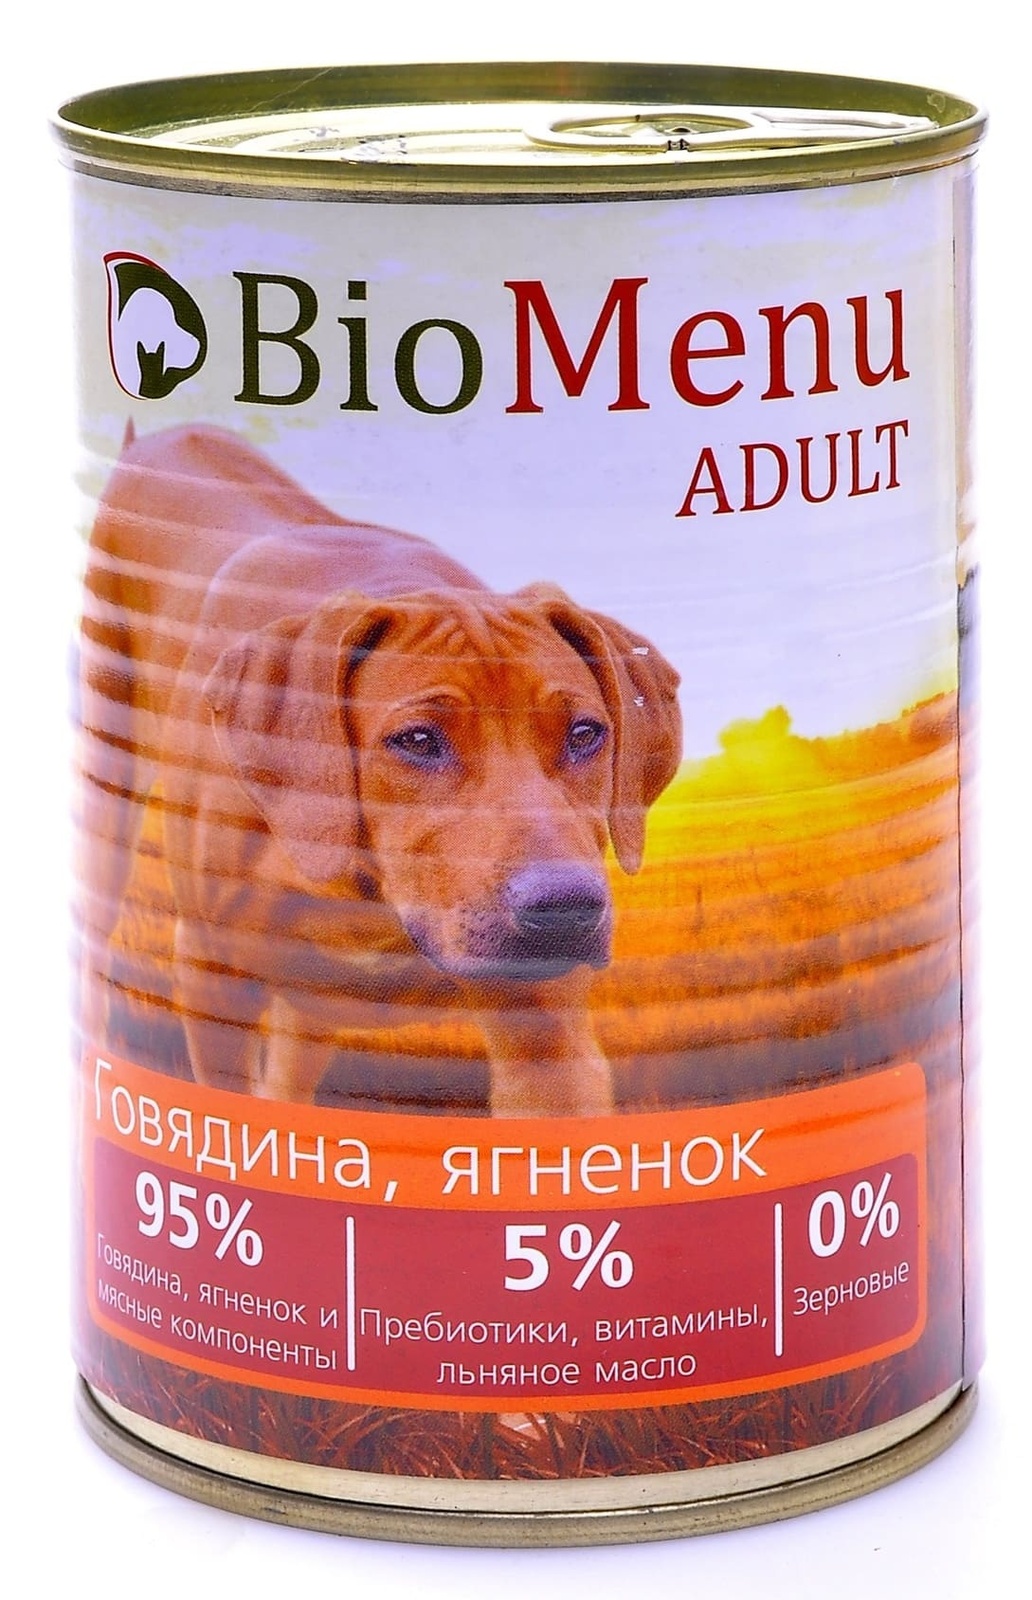 BioMenu BioMenu консервы для собак говядина и ягненок (100 г) biomenu biomenu консервы для собак с говядиной 100 г